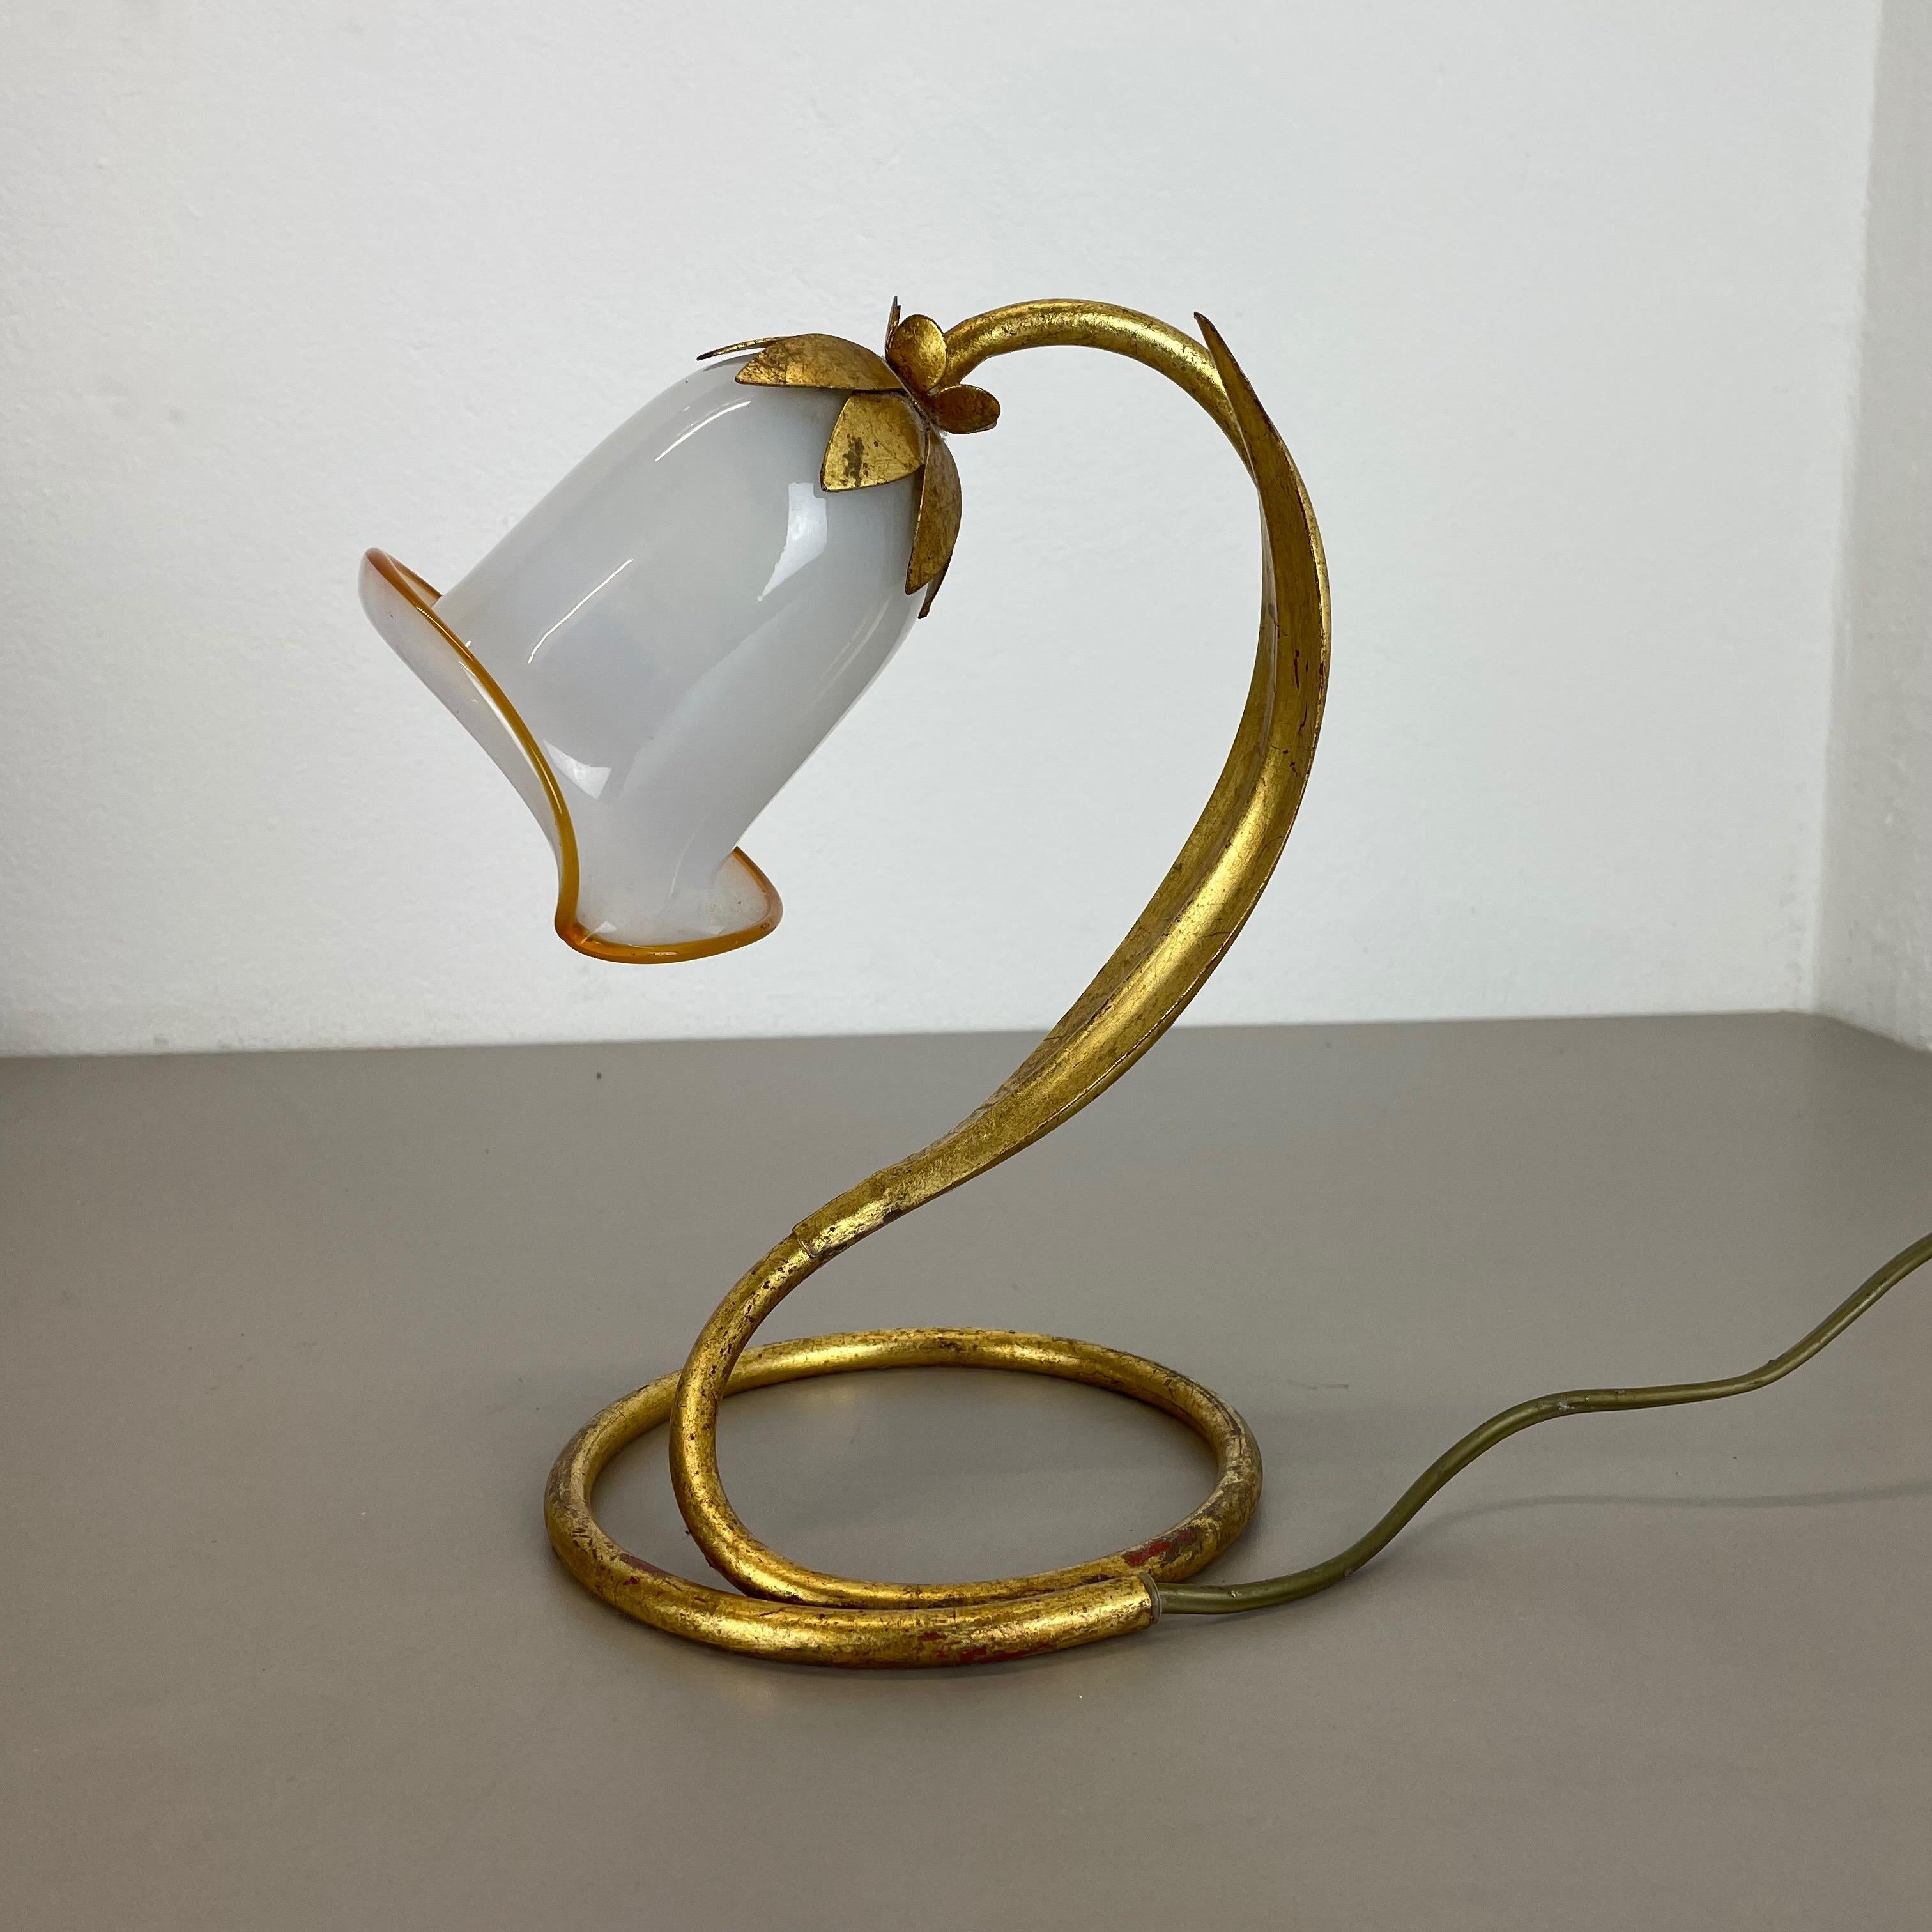 Artikel:

Tischleuchte mit Muranoglasschirm


Herkunft:

Italien



Alter:

1970s.



Diese modernistische Leuchte wurde in den 1970er Jahren in Italien hergestellt. Sie ist aus massivem Metall in Form einer Blume mit einer Blüte auf der Oberseite